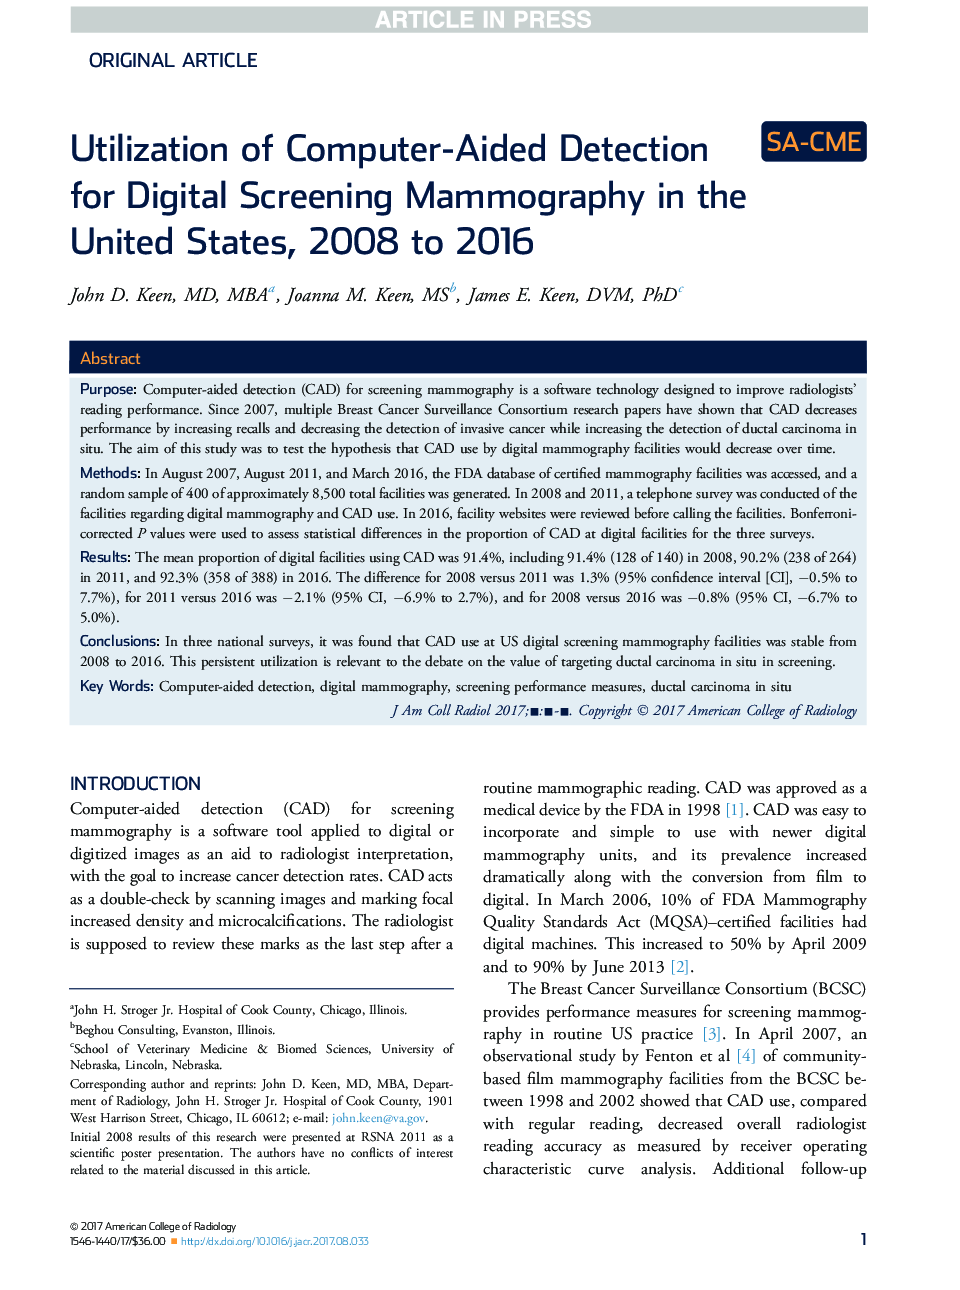 استفاده از تشخیص کامپیوتری برای ماموگرافی غربالگری دیجیتال در ایالات متحده، 2008 تا 2016 